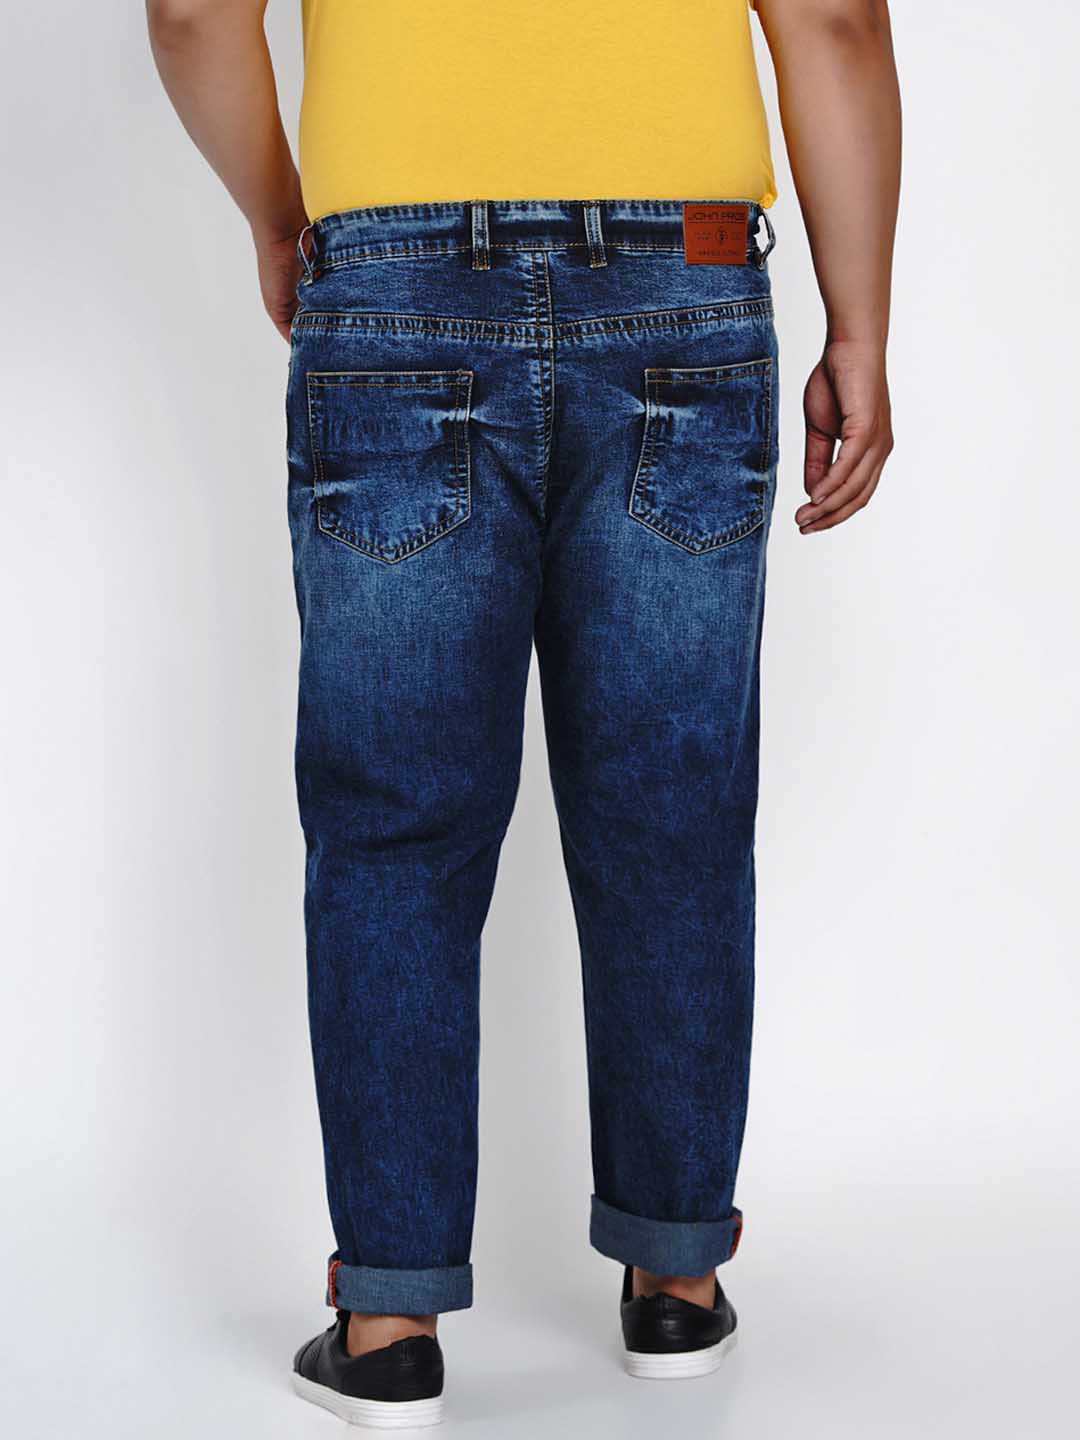 bottomwear/jeans/JPJ1284/jpj1284-5.jpg